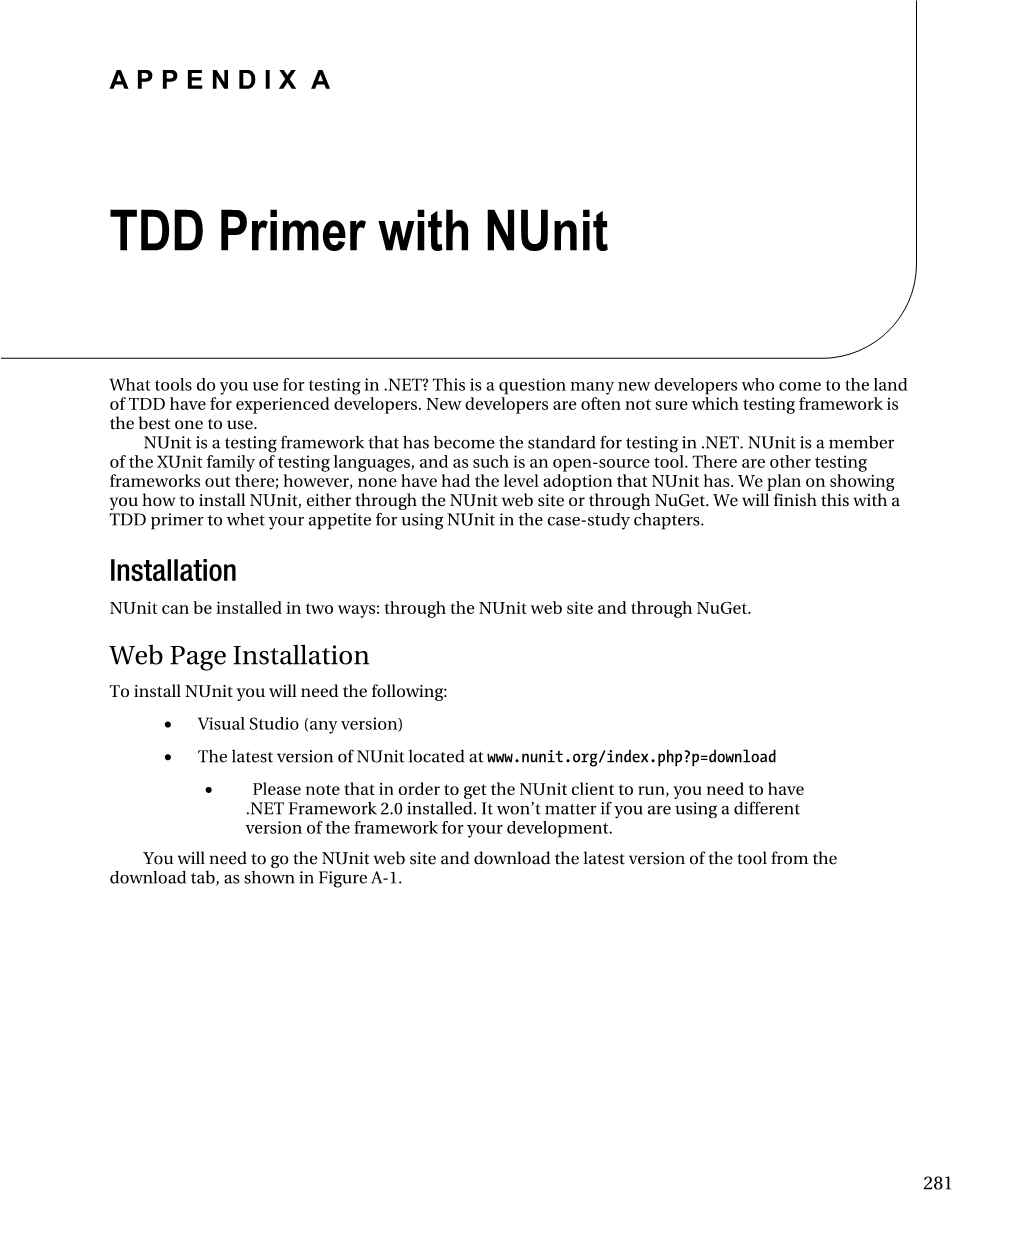 TDD Primer with Nunit